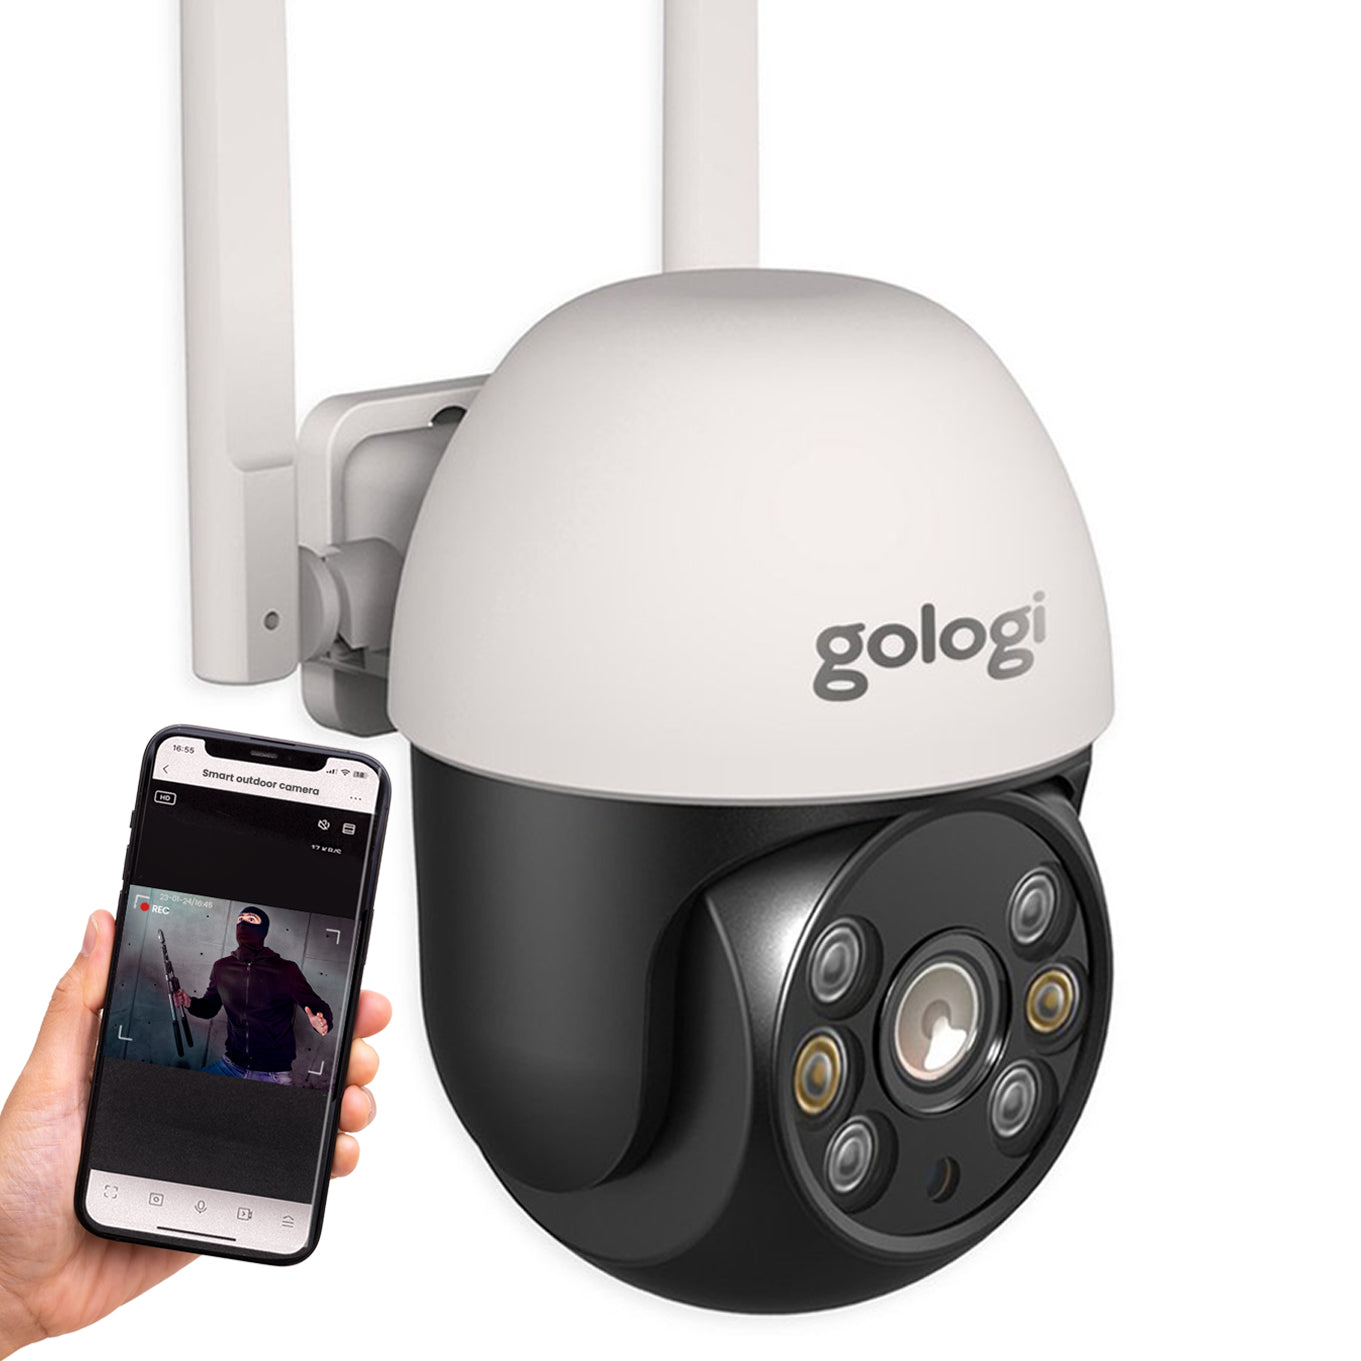 Gologi outdoor camera - Buiten camera met nachtzicht - Beveiligingscamera - IP camera -  Security camera - 4x Digitale zoom - 3MP - Met wifi en app